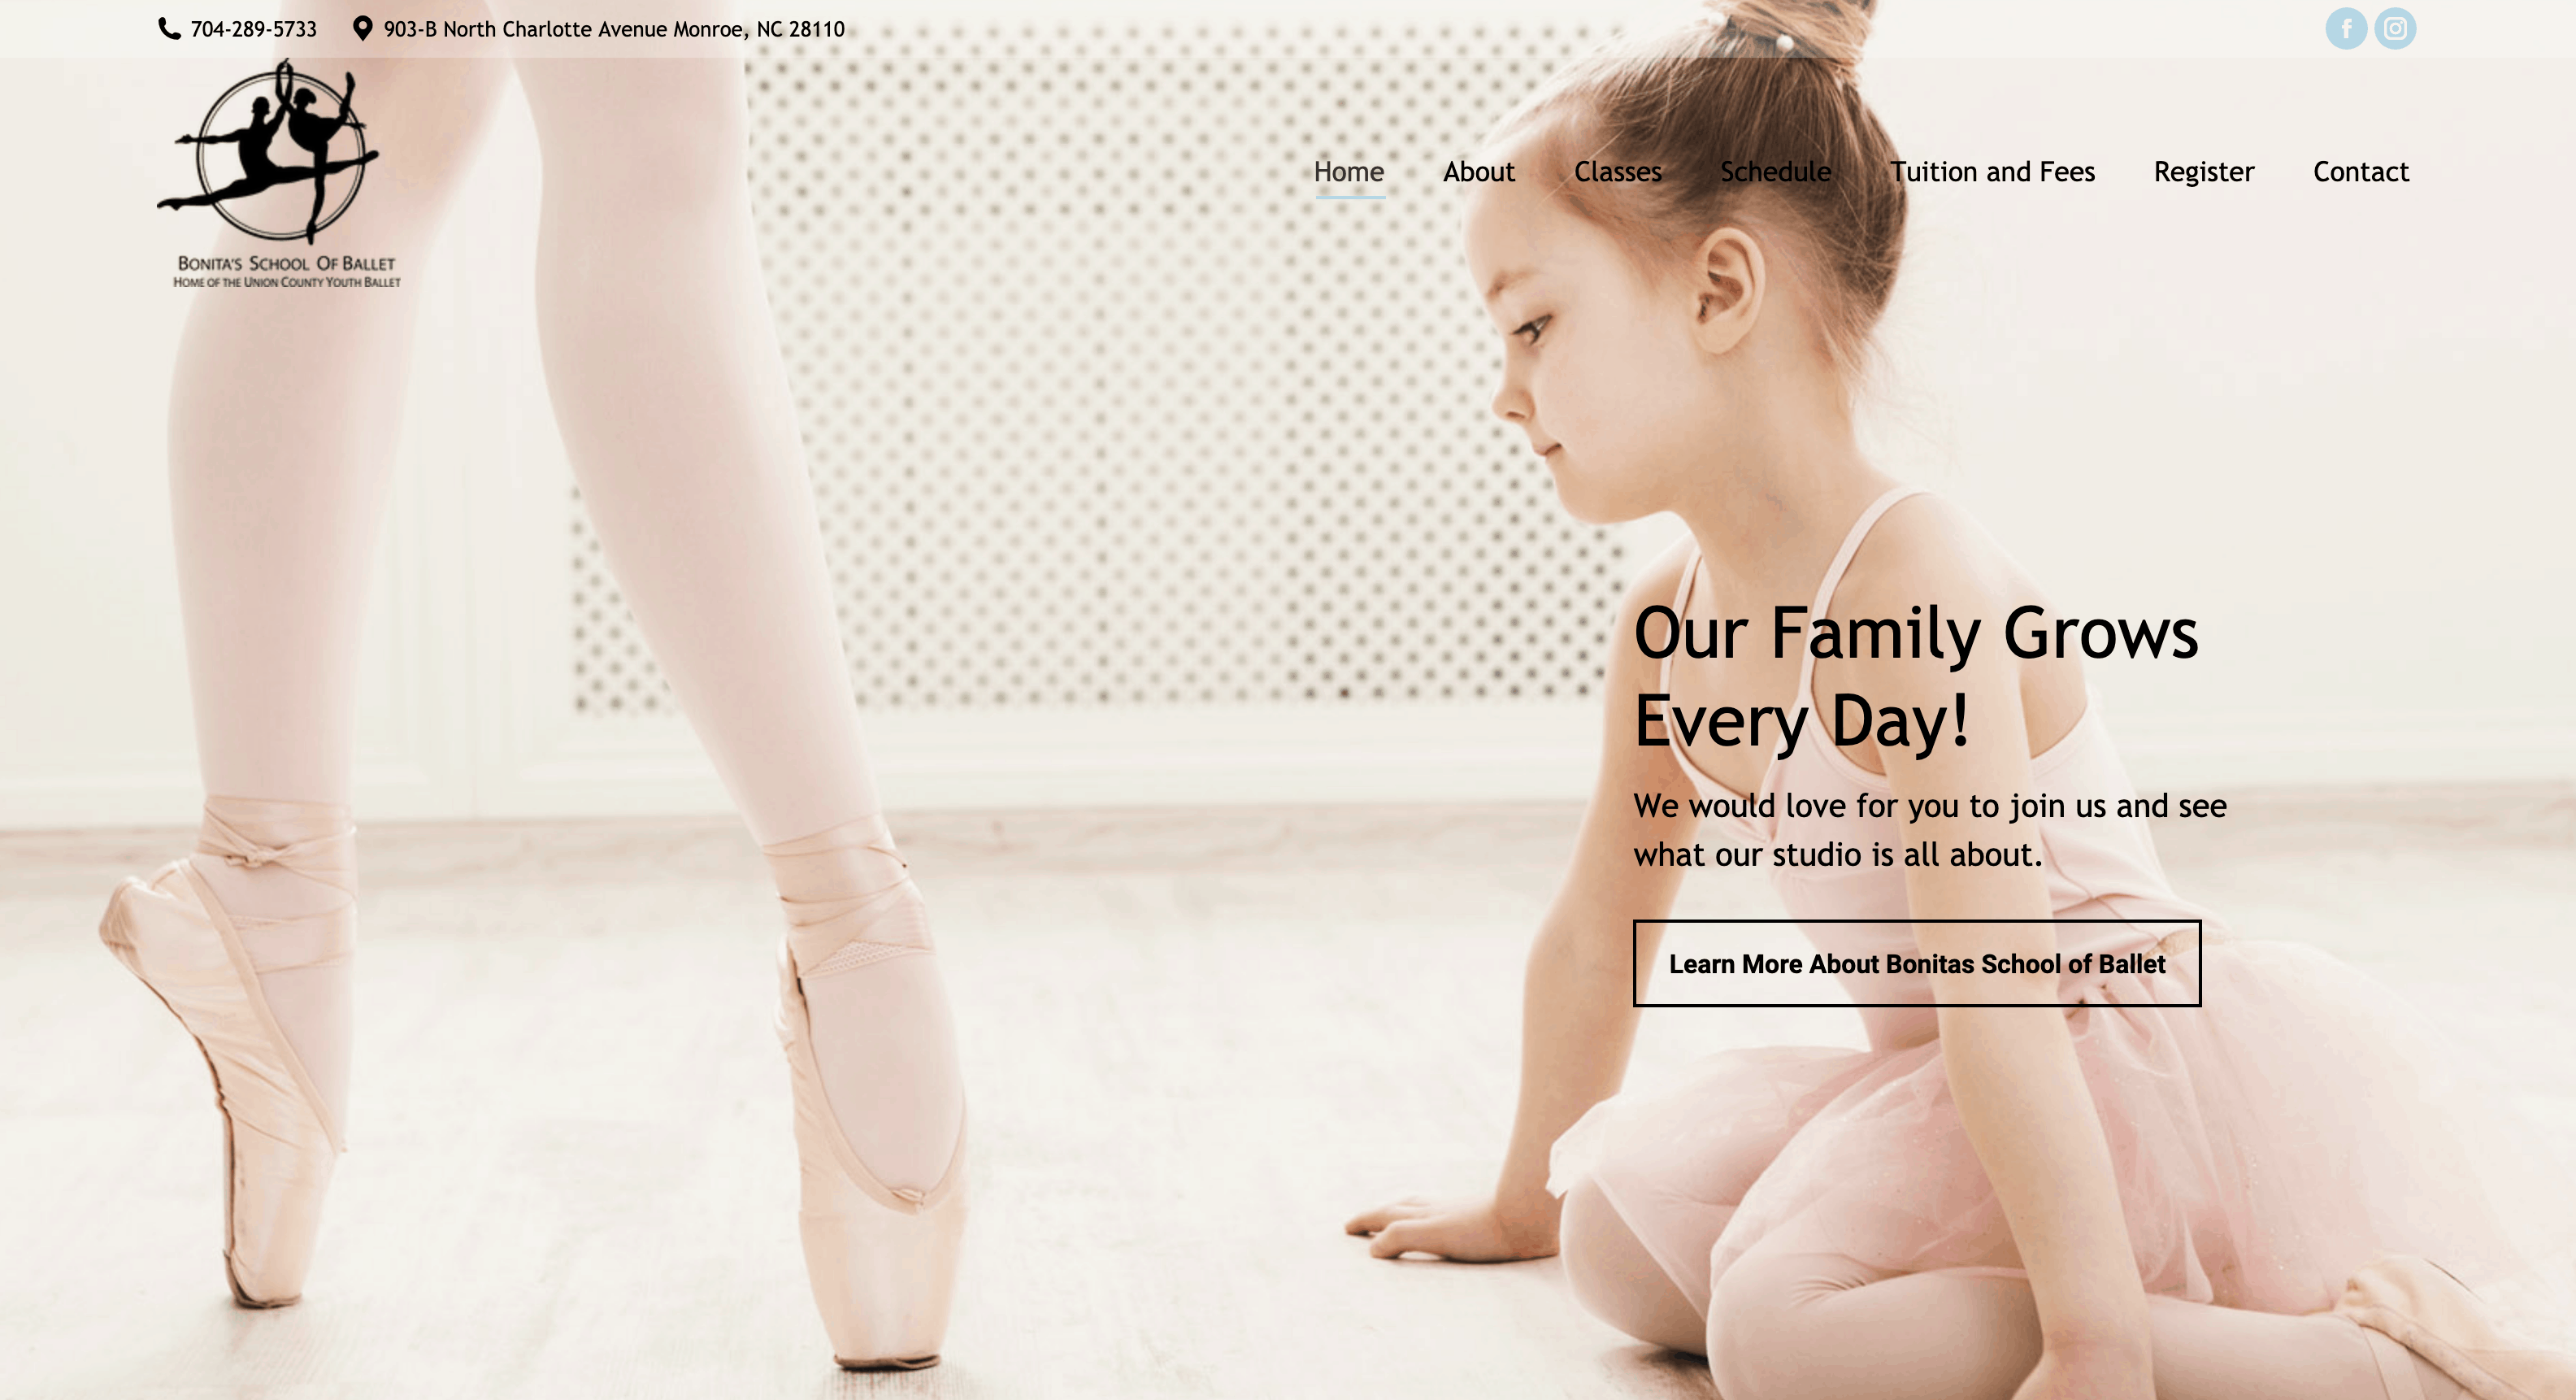 Bonita's school of ballet WordPress website design services